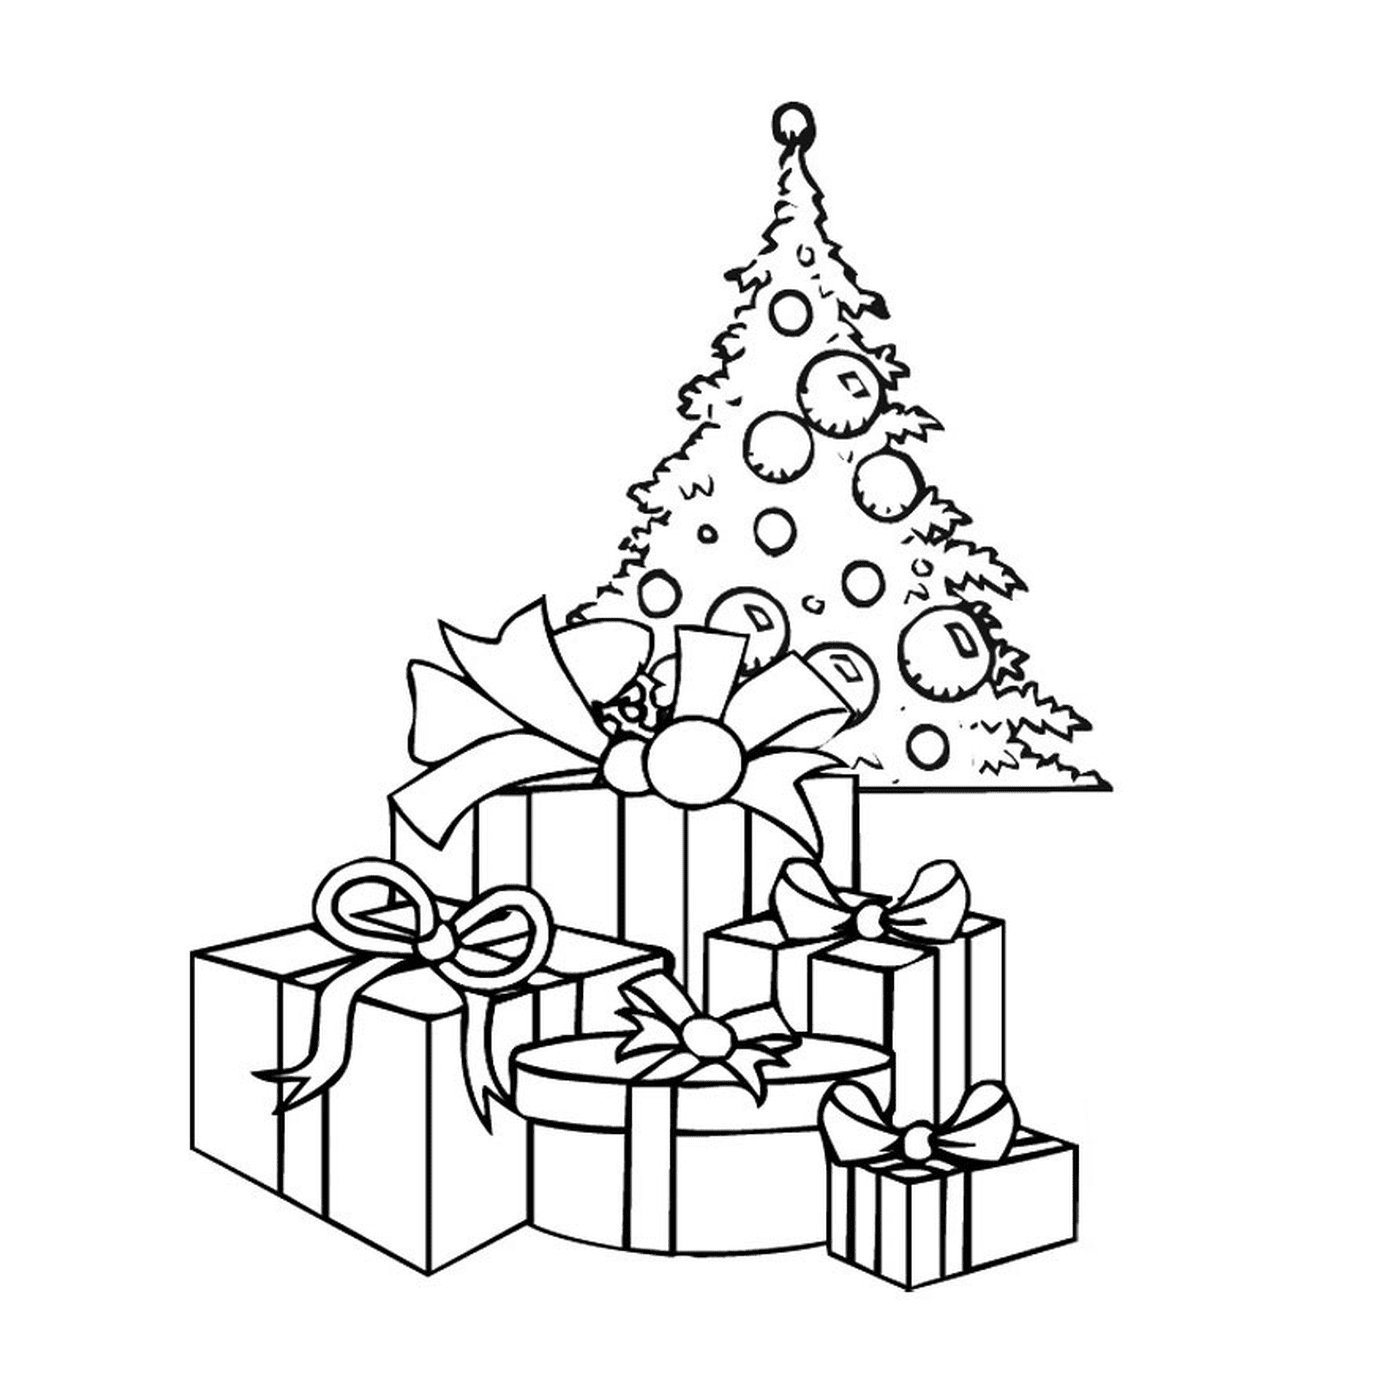  Conejito de Navidad con regalos abajo 